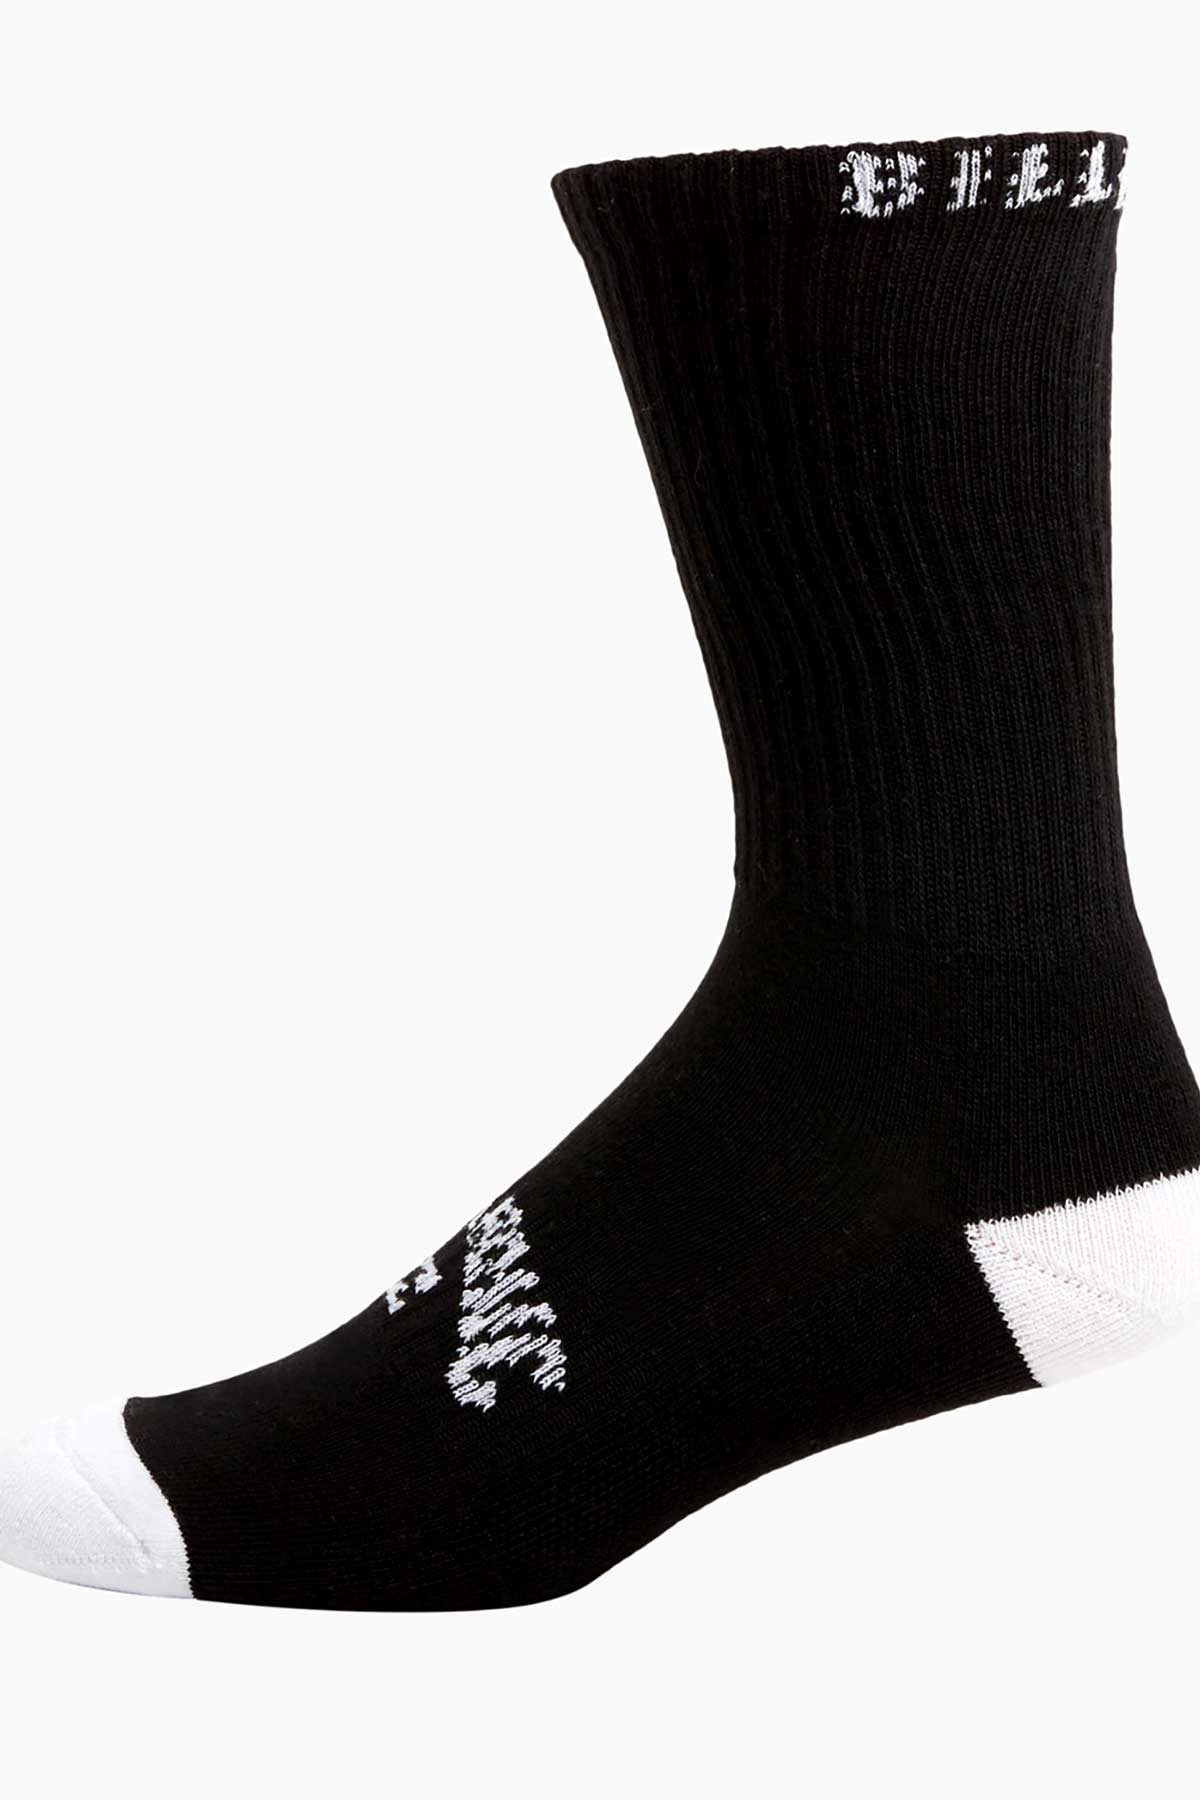 Billabong Sport Socks - 5 Pack Multi, Black.